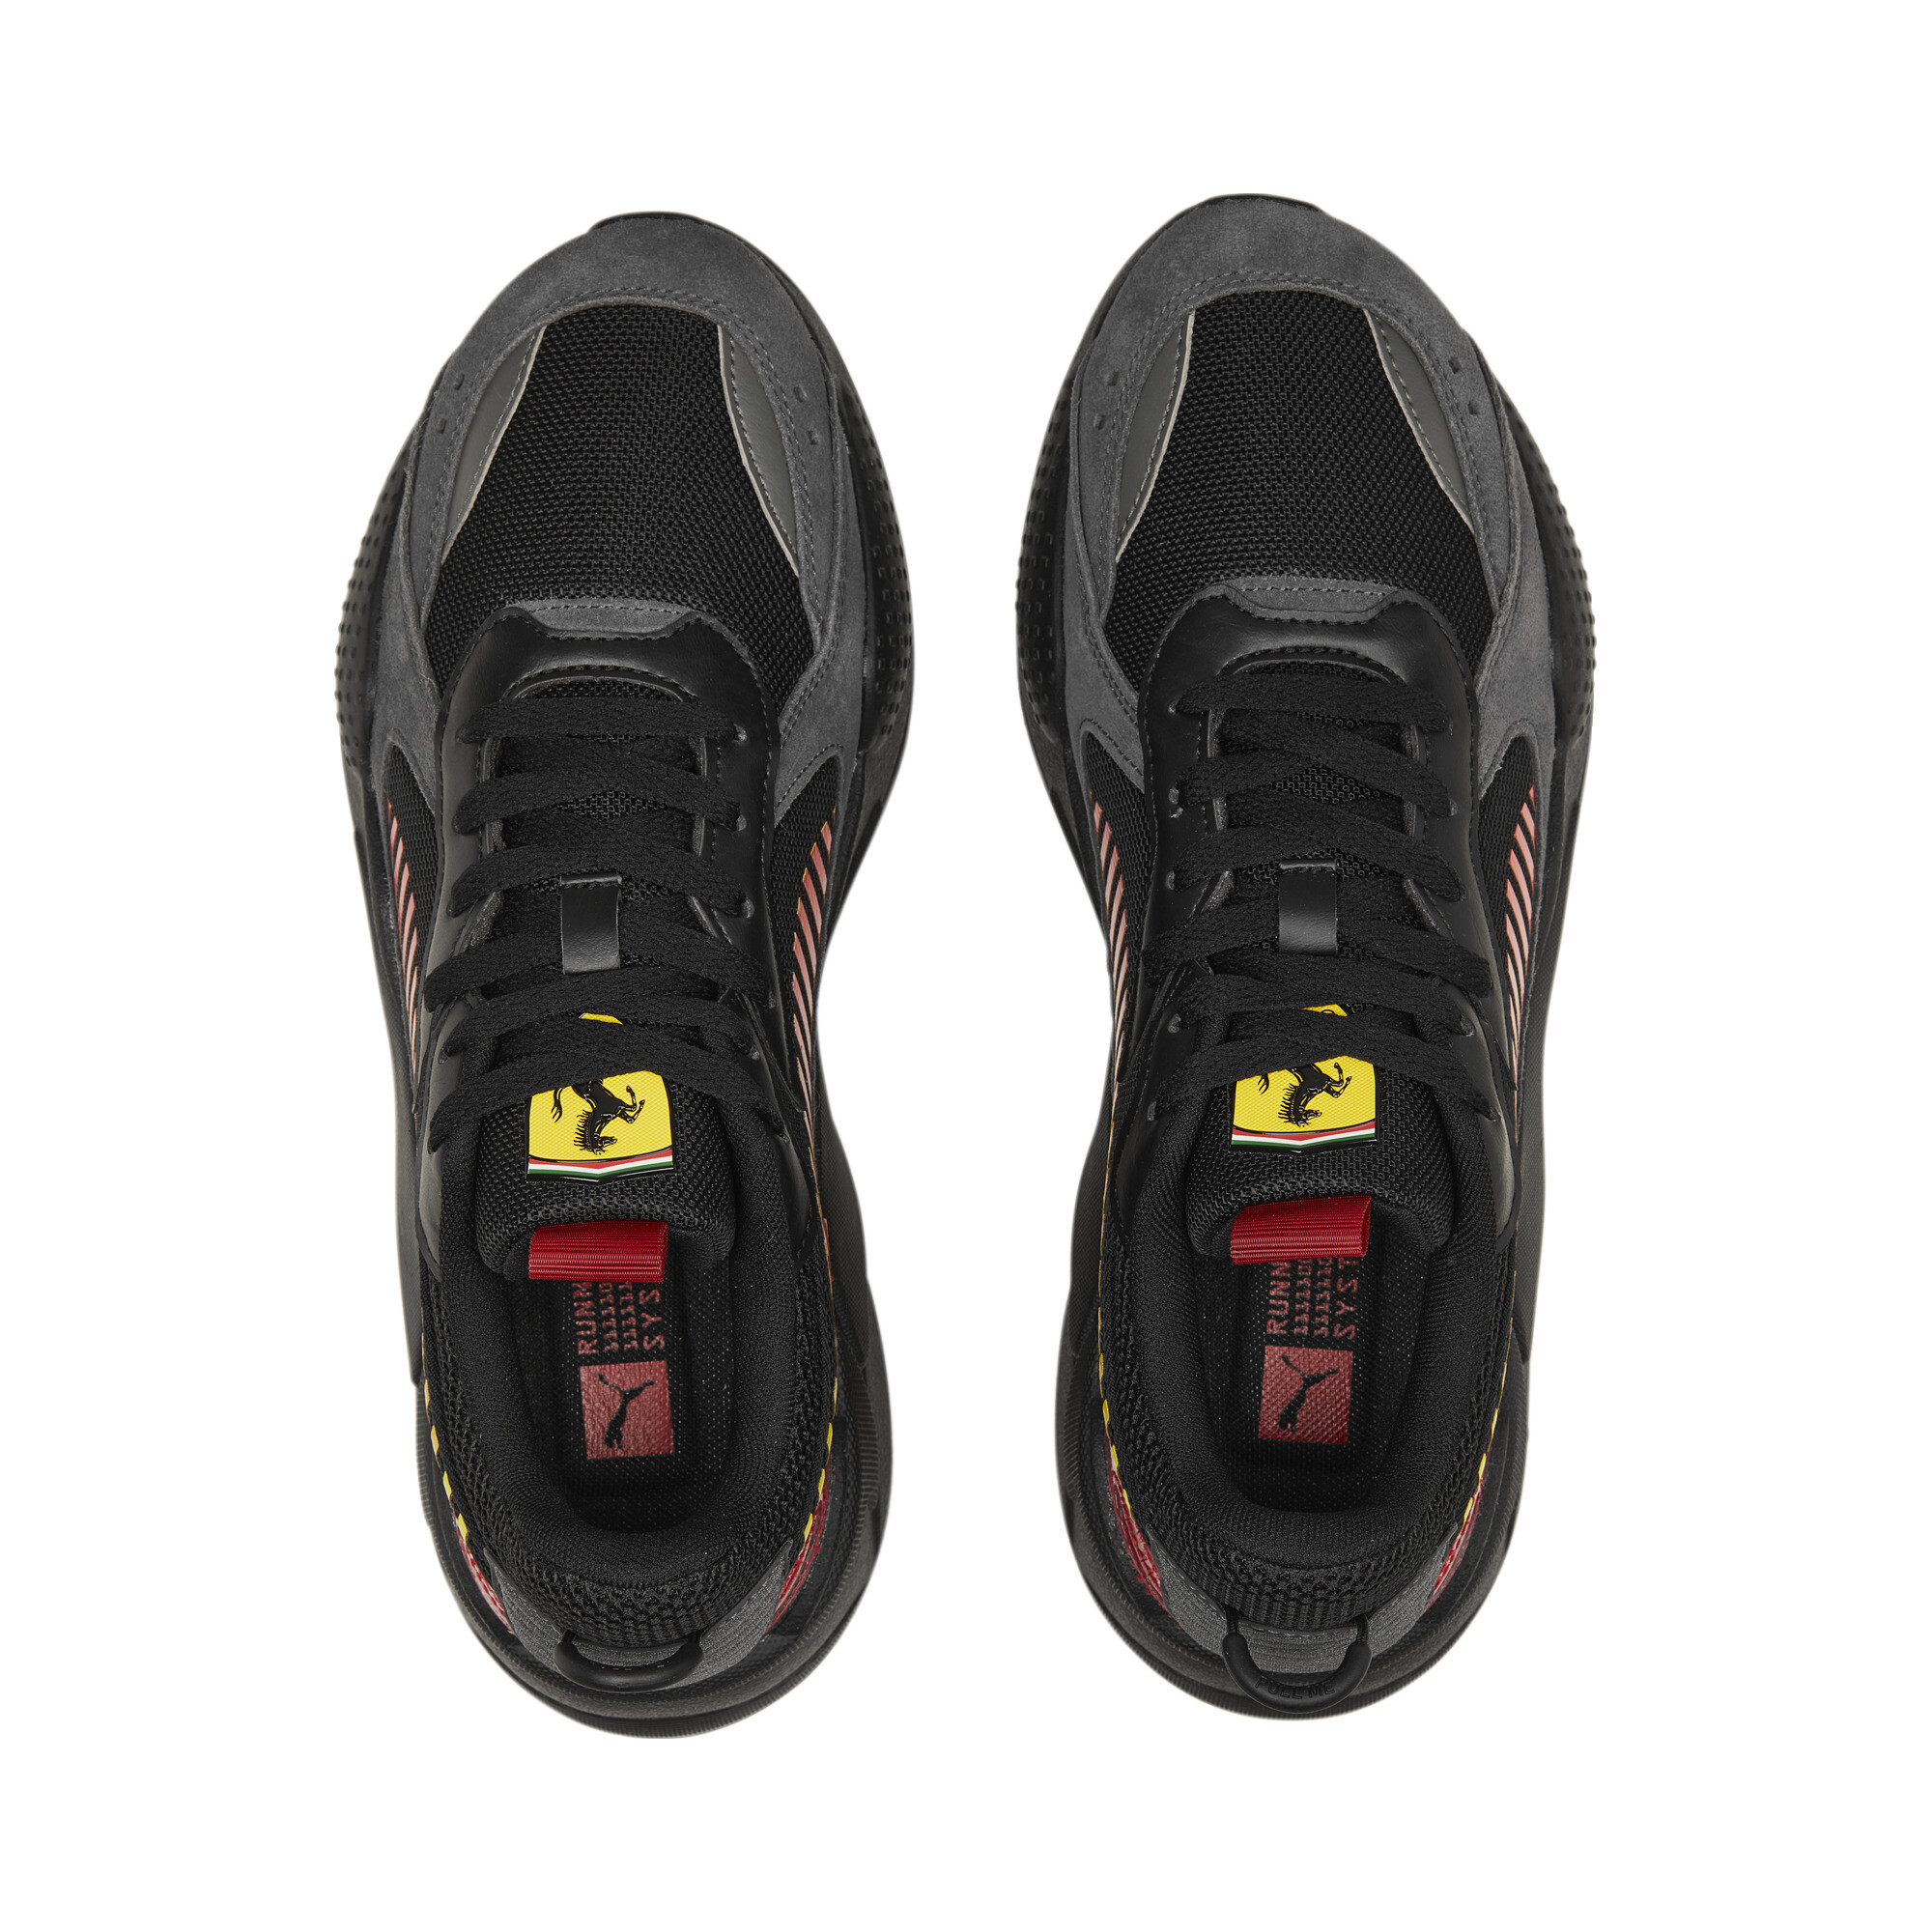 Men's PUMA Scuderia Ferrari RS-X Motorsport Shoes In Red, Size EU 48